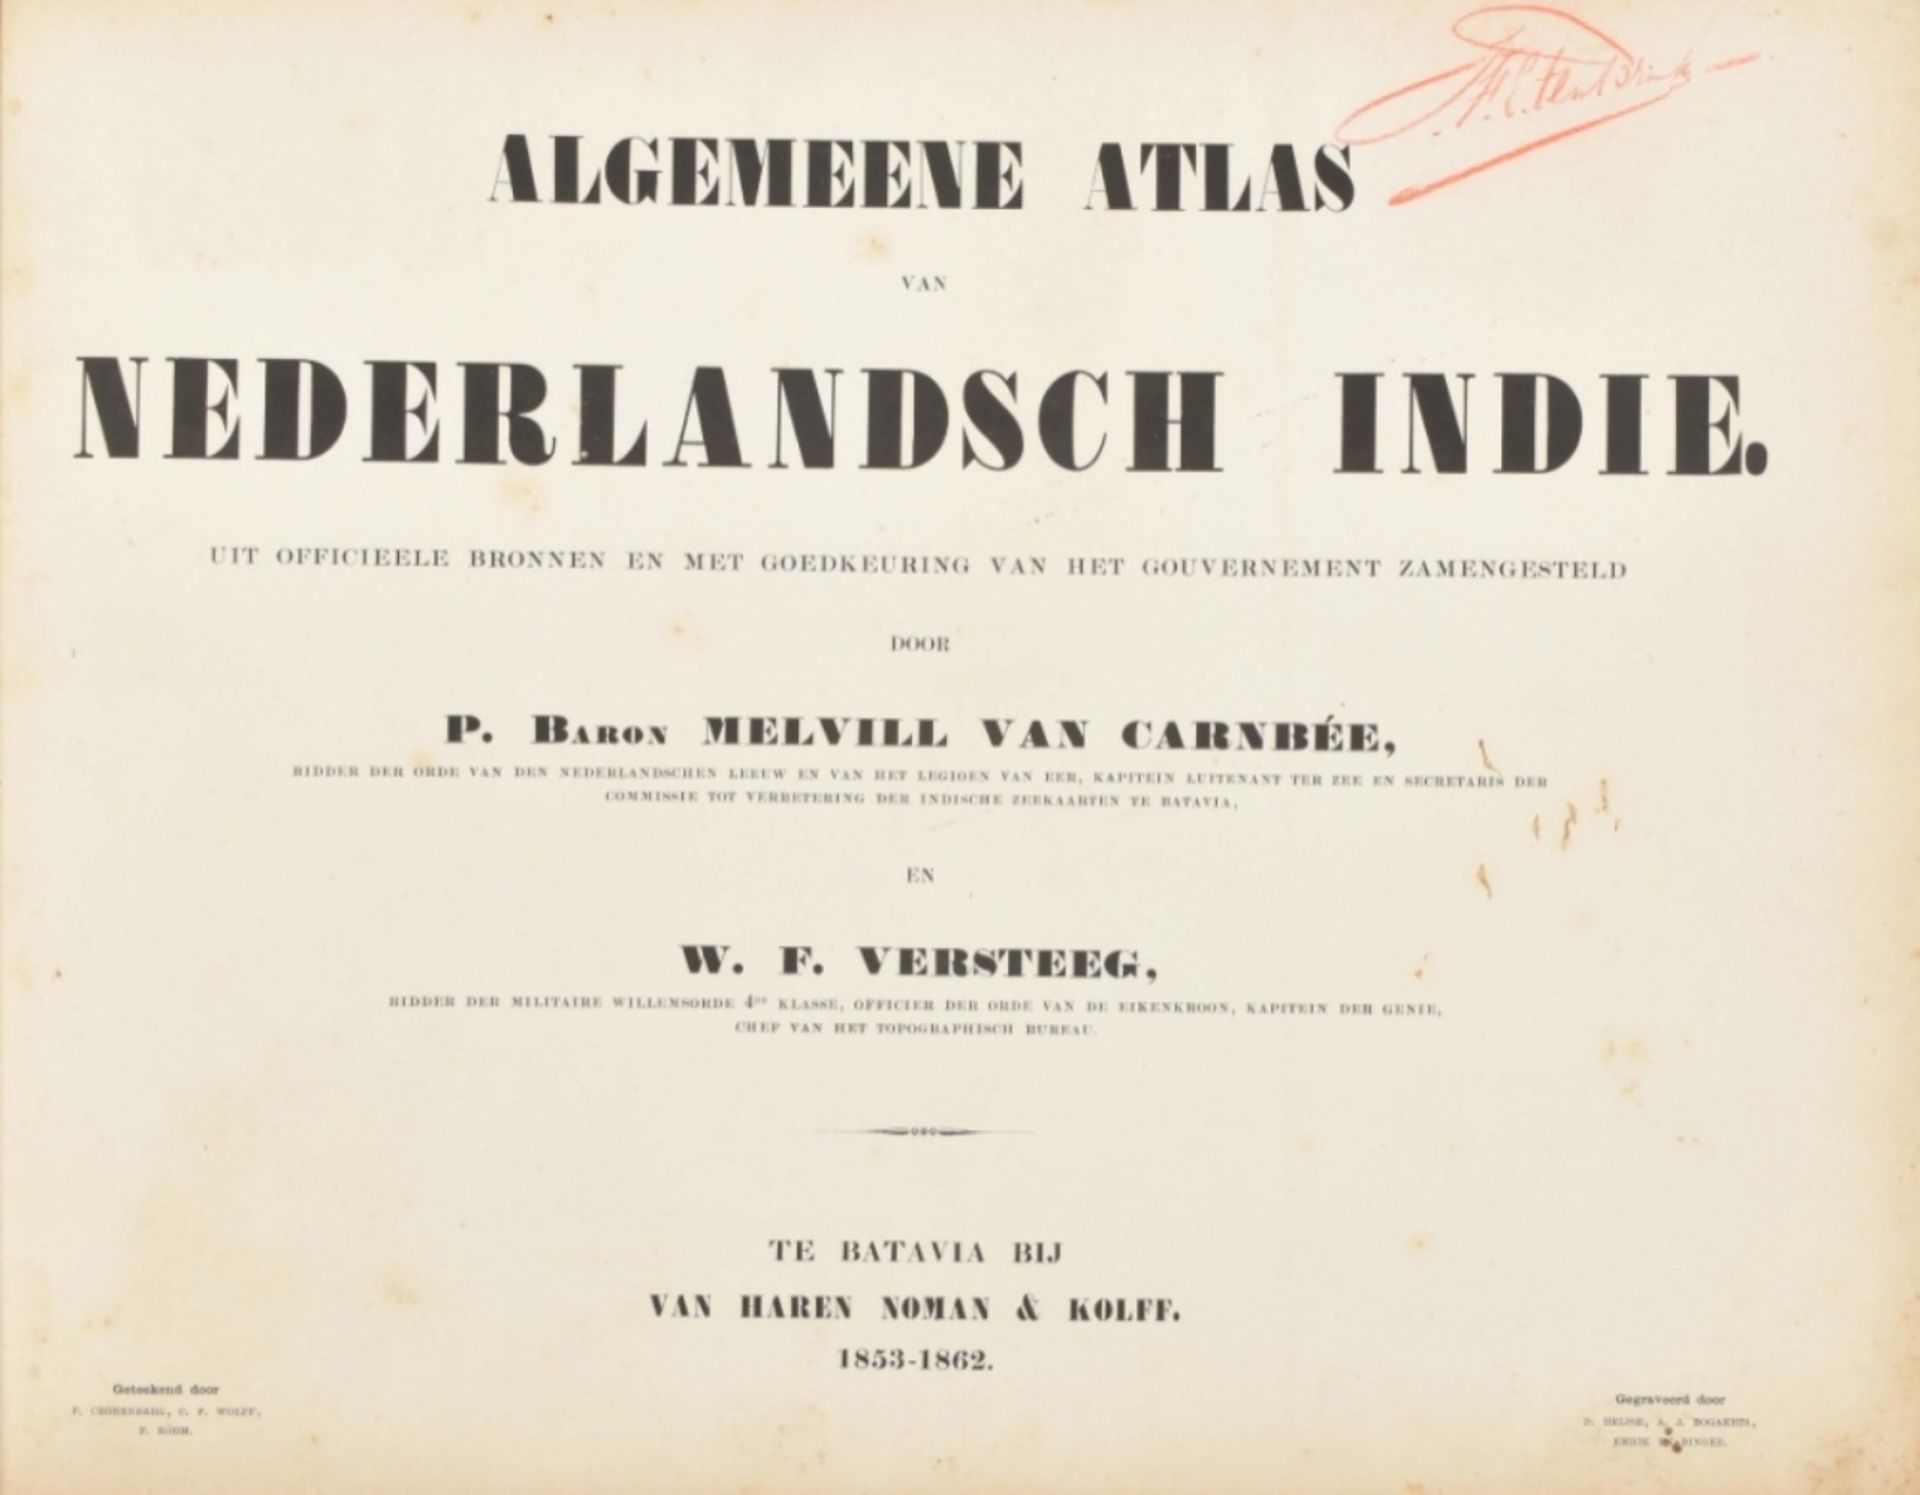 P. Melvill van Carnbée. W.F. Versteeg. Algemeene atlas van Nederlandsch Indië - Image 3 of 10